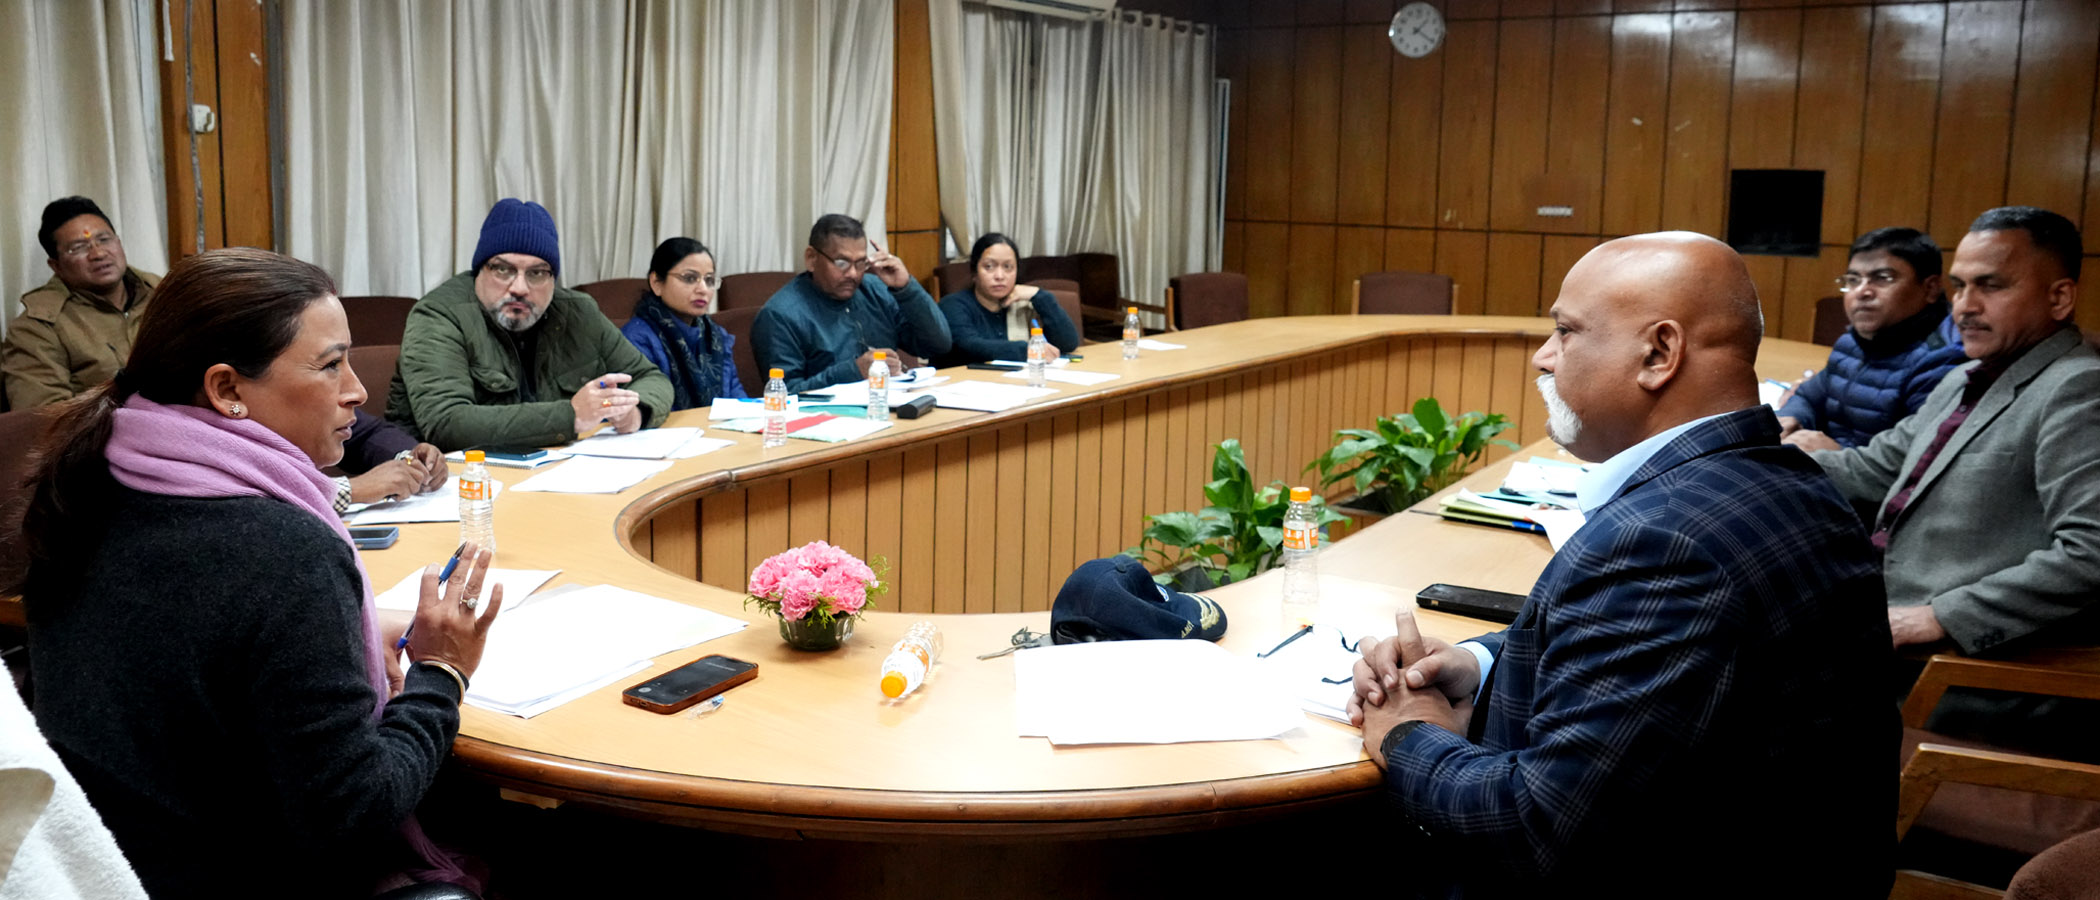 मंत्री रेखा आर्य ने खेल एवं युवा कल्याण से संबंधित मुख्यमंत्री घोषणाओं की समीक्षा की